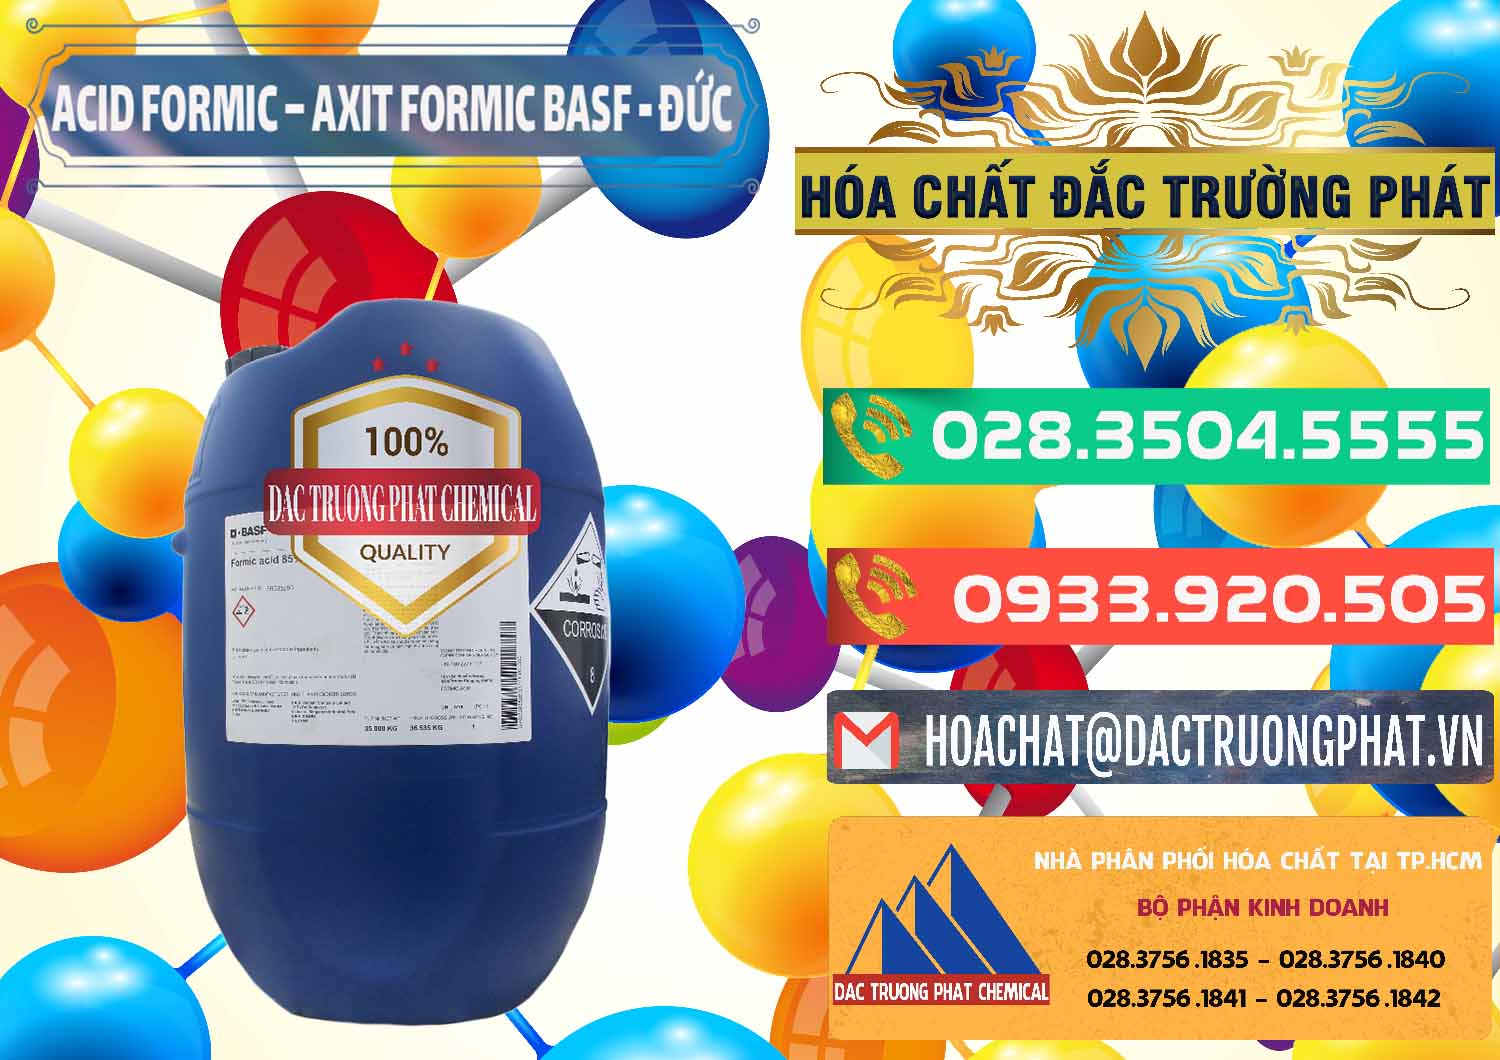 Đơn vị bán & cung cấp Acid Formic - Axit Formic BASF Đức Germany - 0028 - Nơi cung cấp ( kinh doanh ) hóa chất tại TP.HCM - congtyhoachat.com.vn